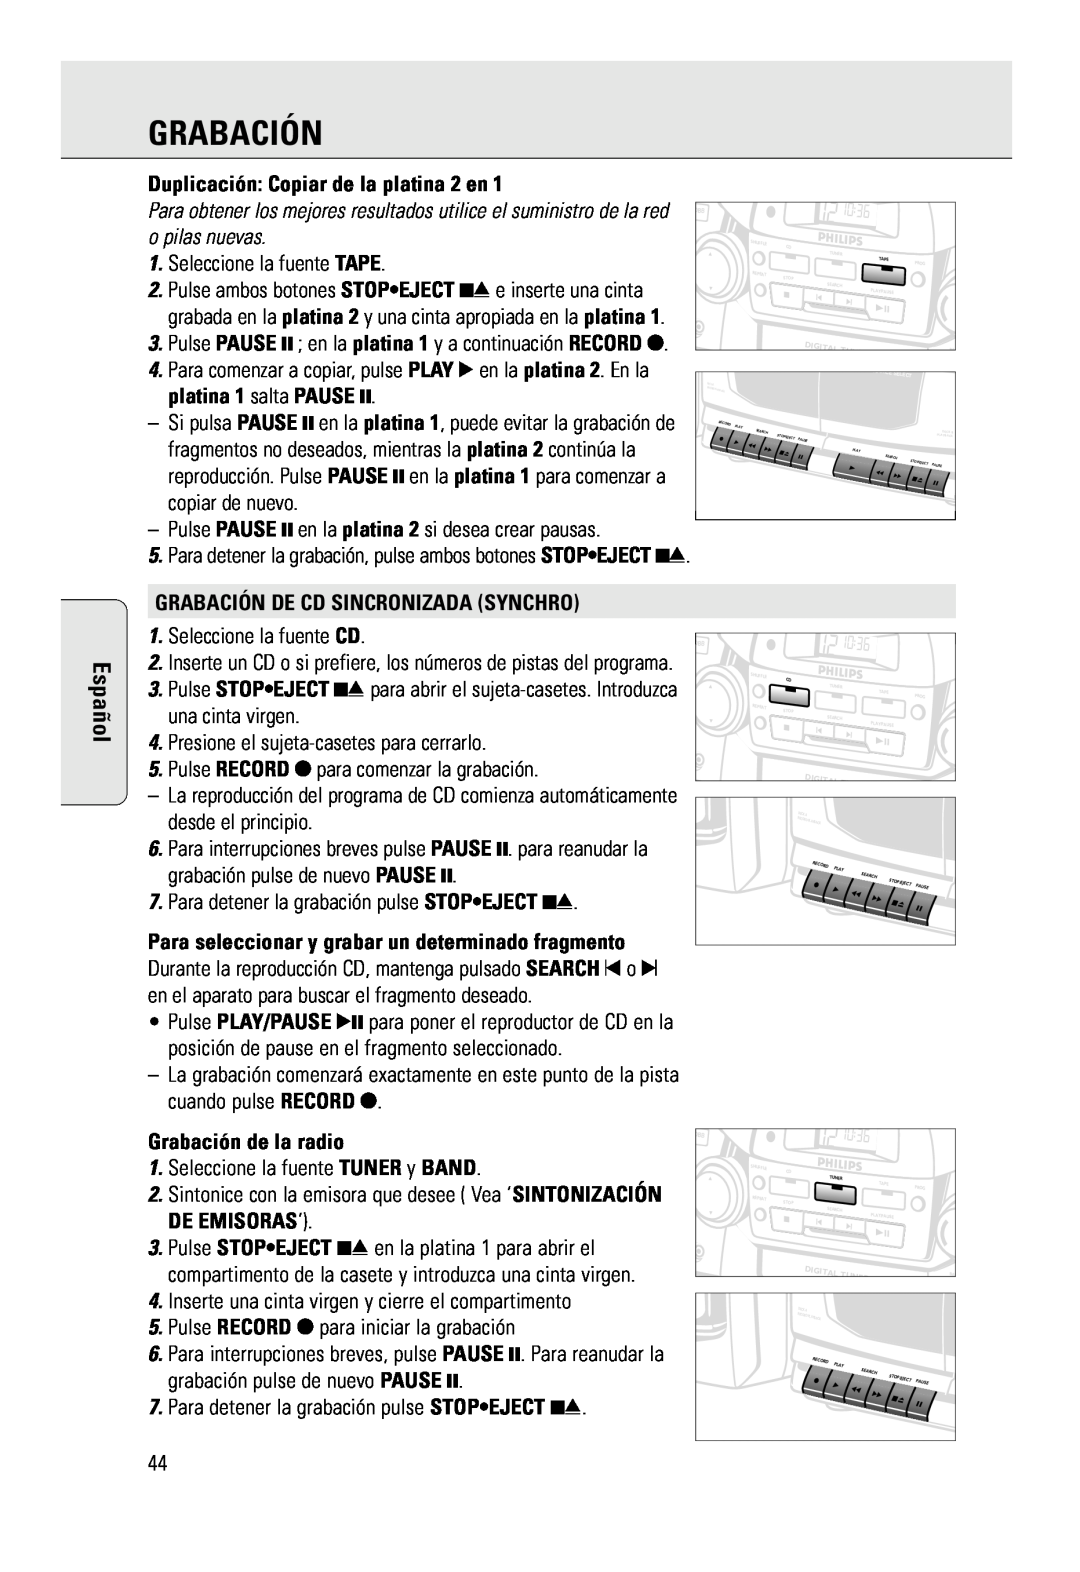 Philips AZ 2785 manual Español, Duplicación Copiar de la platina 2 en, Grabación De Cd Sincronizada Synchro 